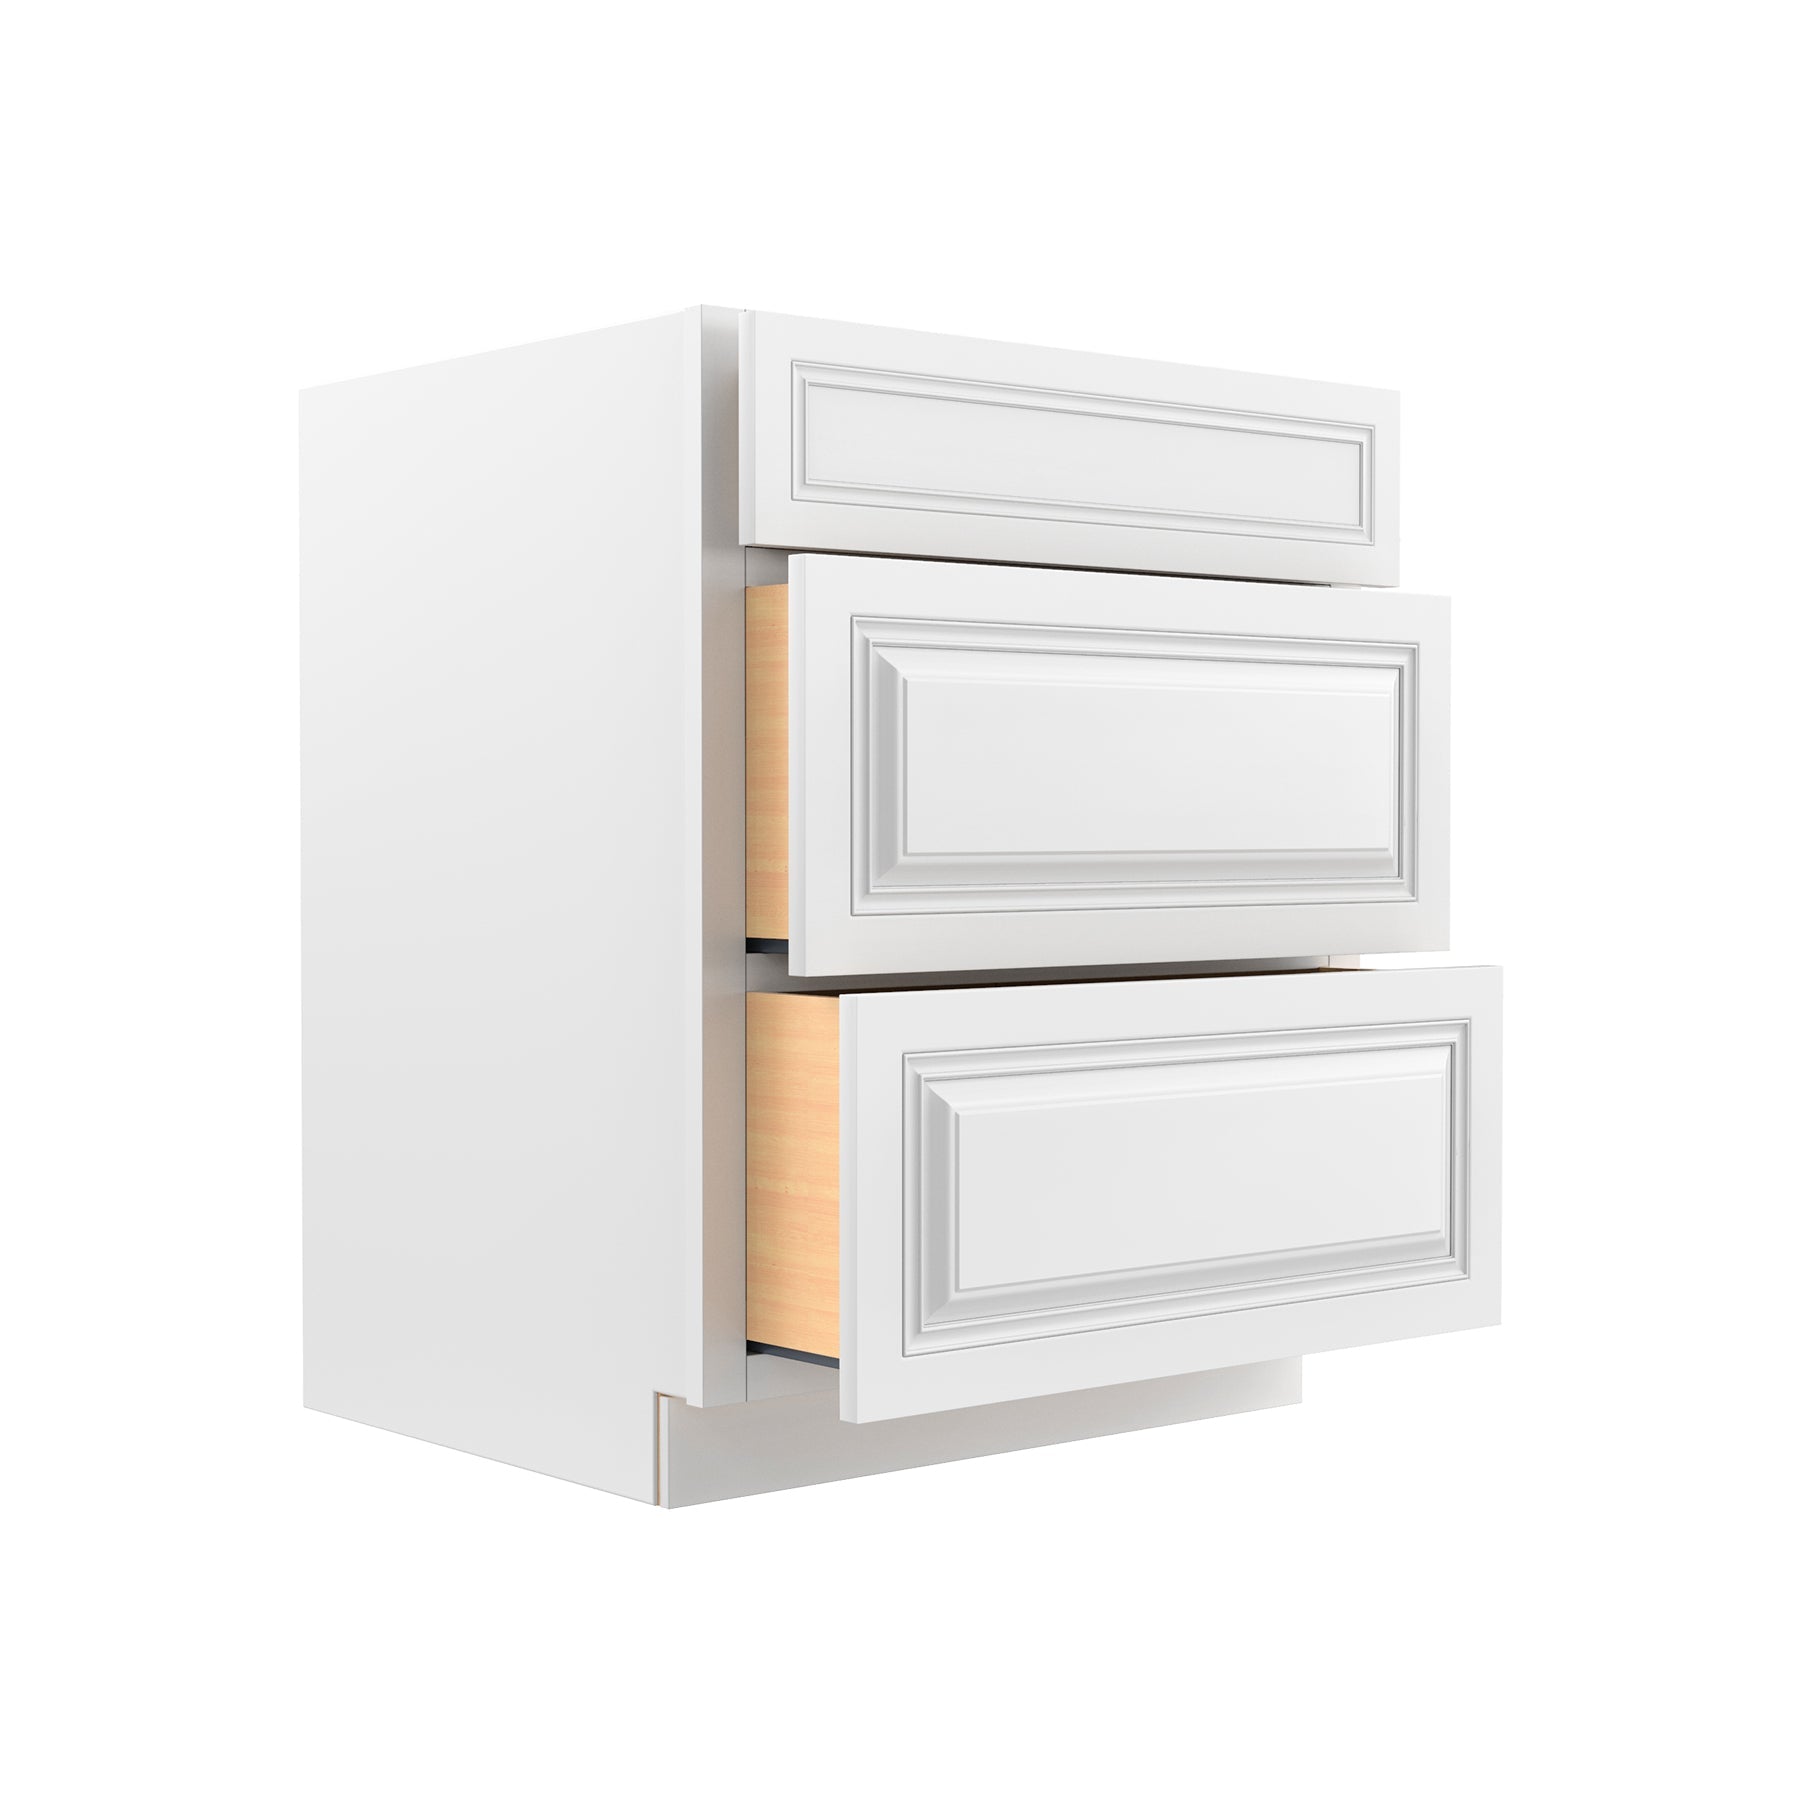 RTA - Park Avenue White - 3 Drawer Base Cabinet | 27"W x 34.5"H x 24"D